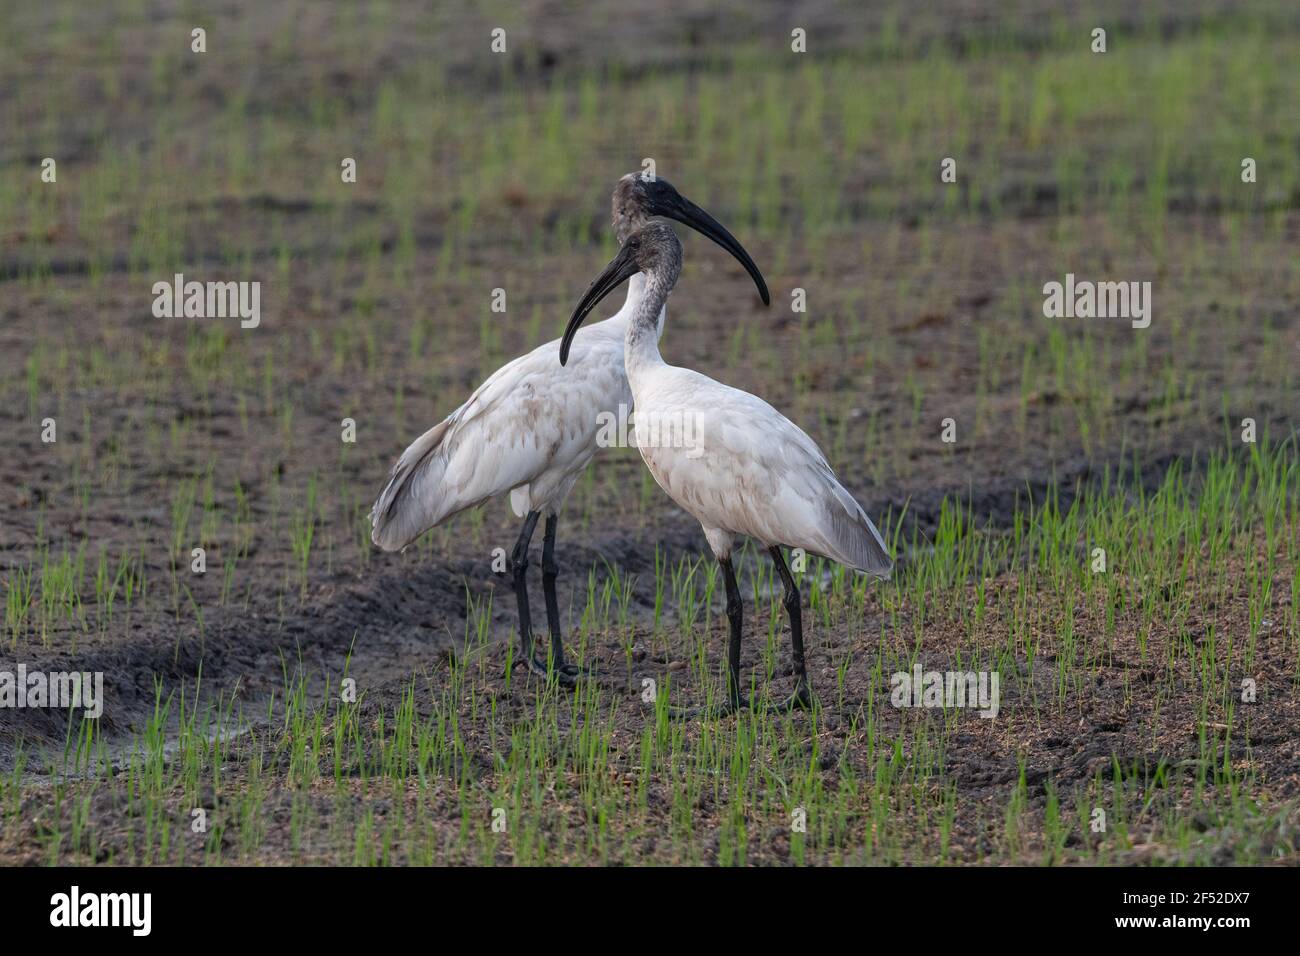 The black-headed ibis (Threskiornis melanocephalus), also known as the Oriental white ibis, Indian white ibis, and black-necked ibis. Stock Photo